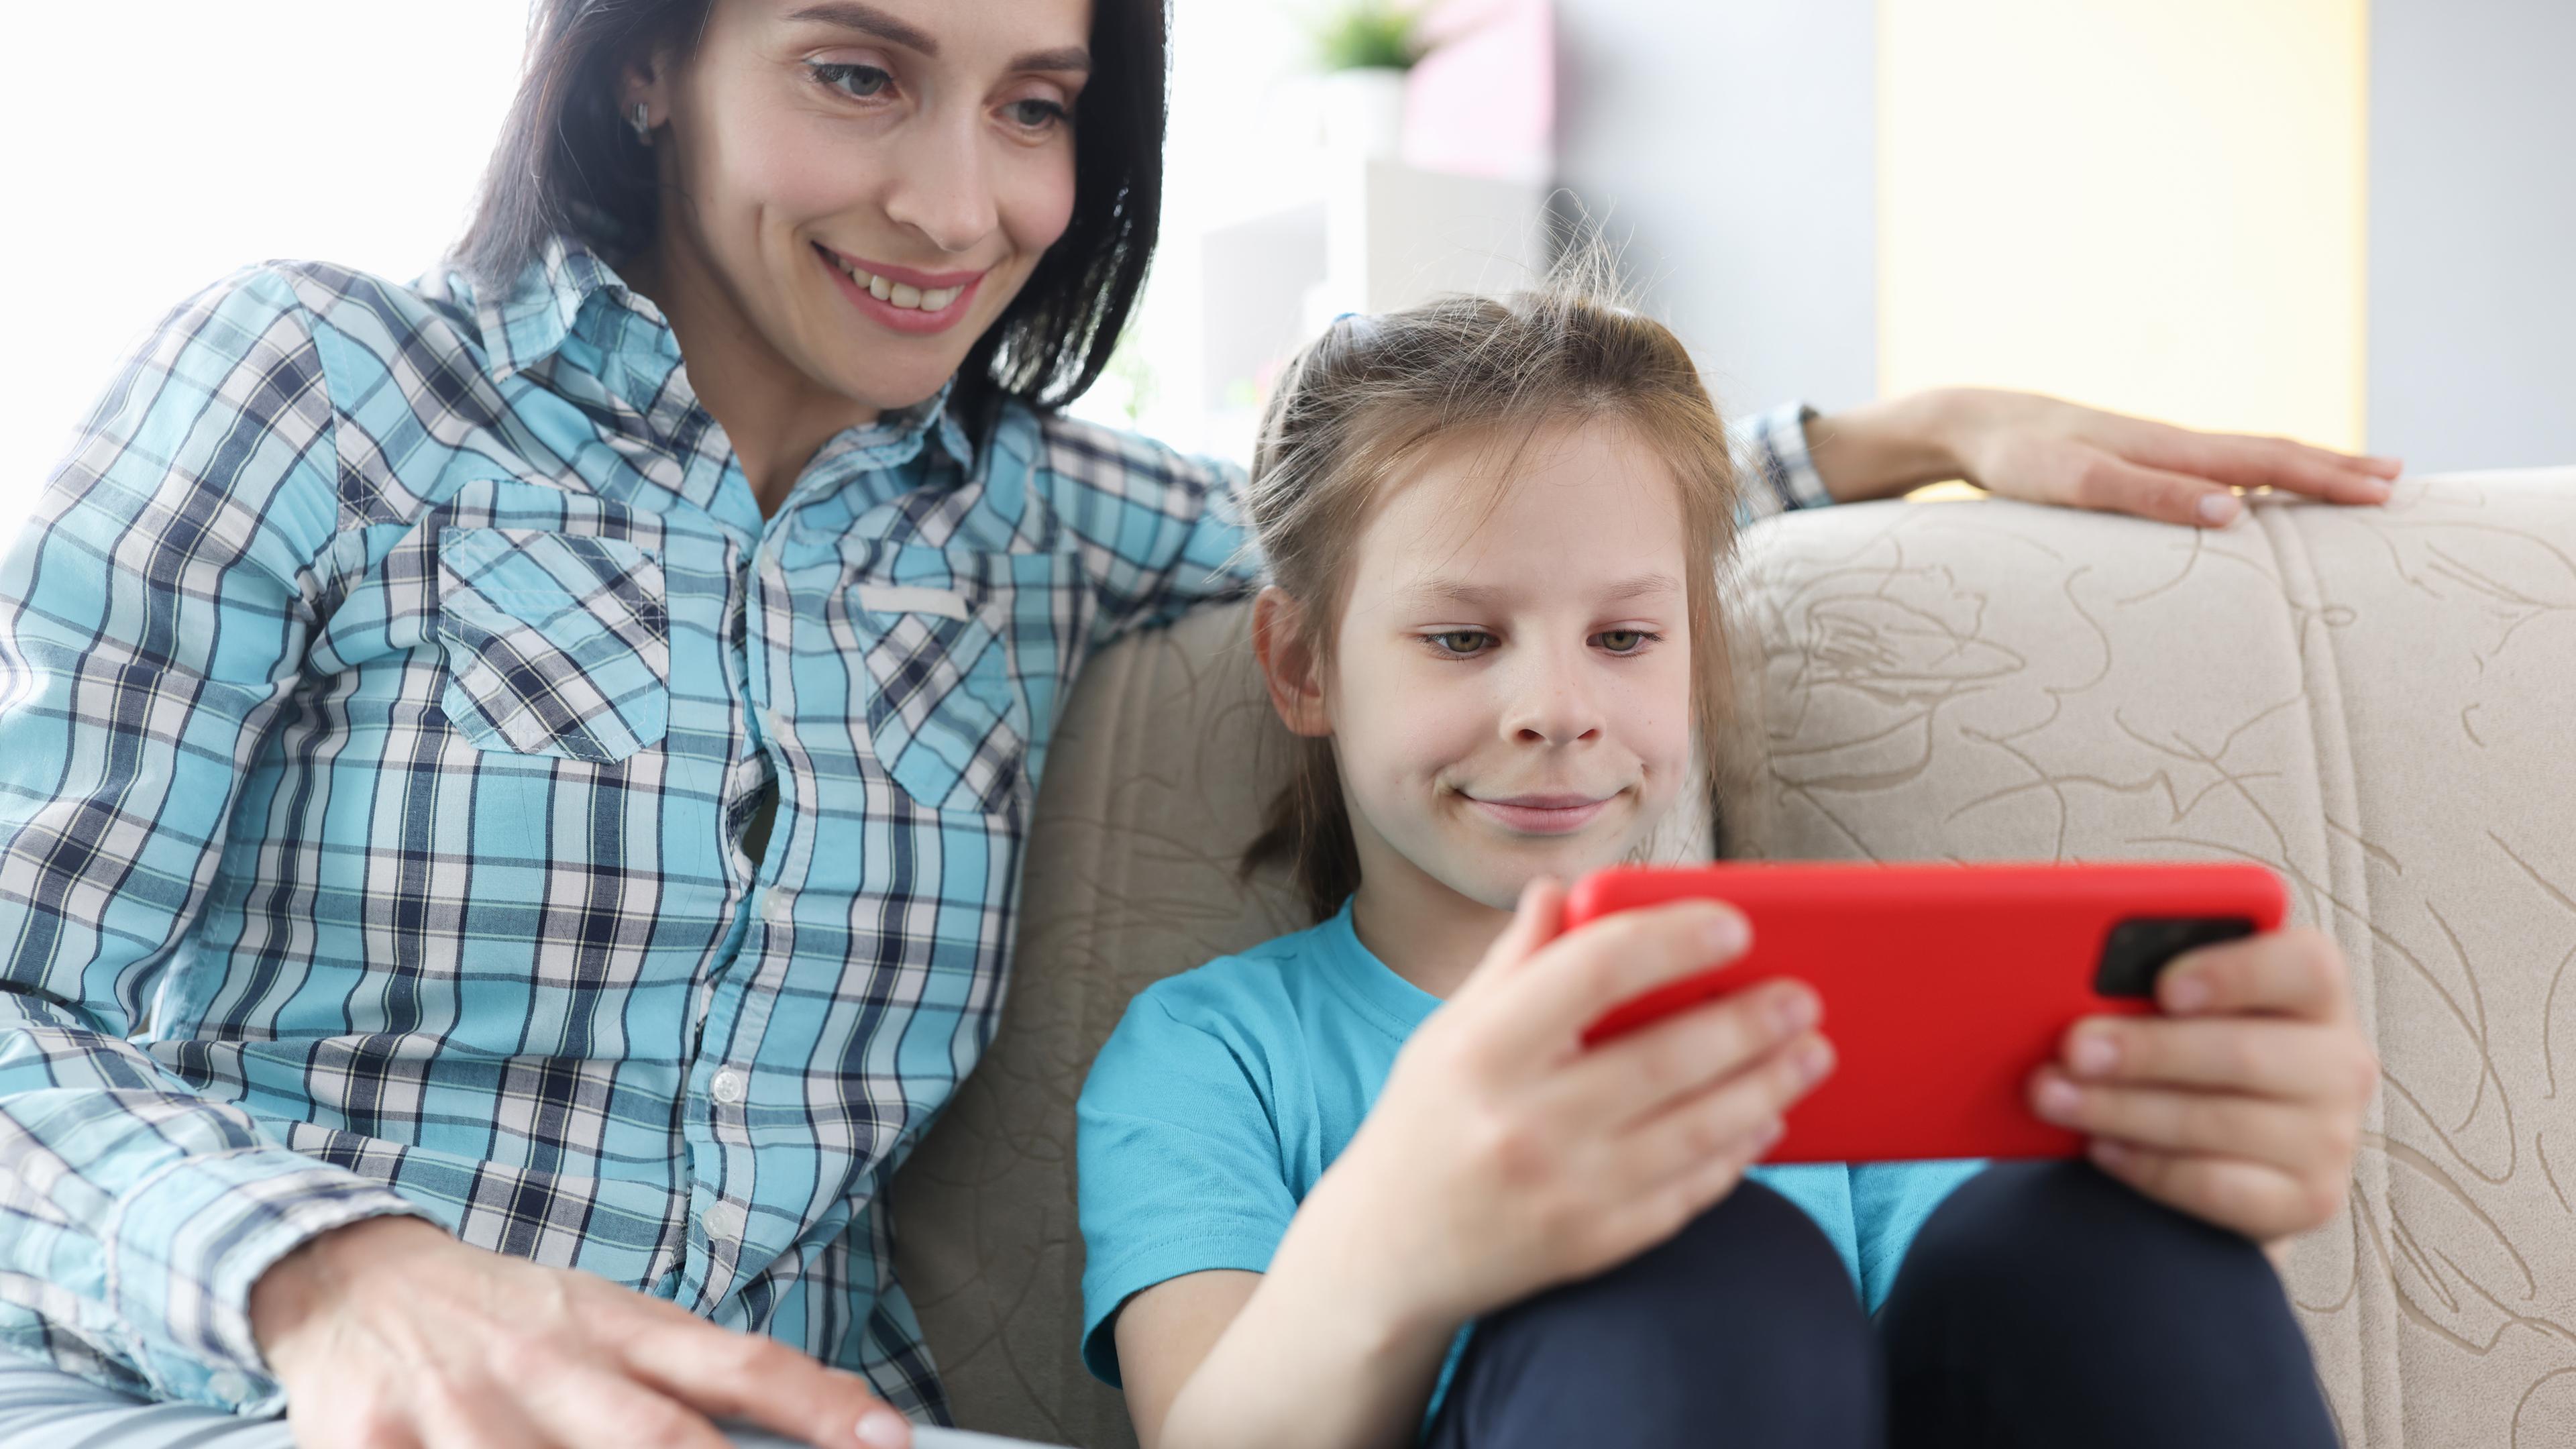 Eine erwachsene Frau mit braunen Haaren und ein junges Mädchen mit blonden Haaren sitzen auf einer Couch und schauen zusammen auf ein orangenes Smartphone.